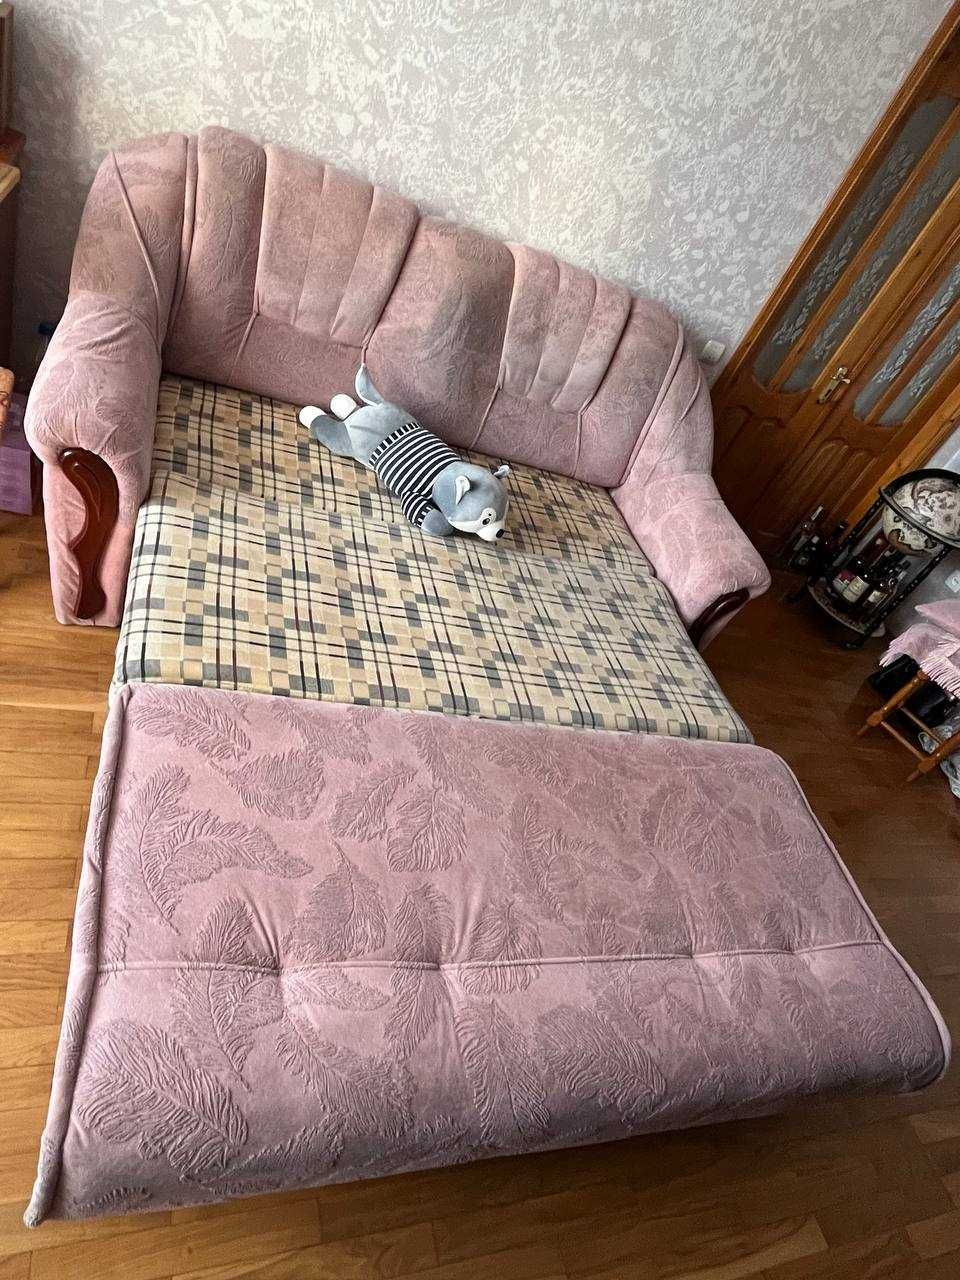 Двоспальний розкладний диван